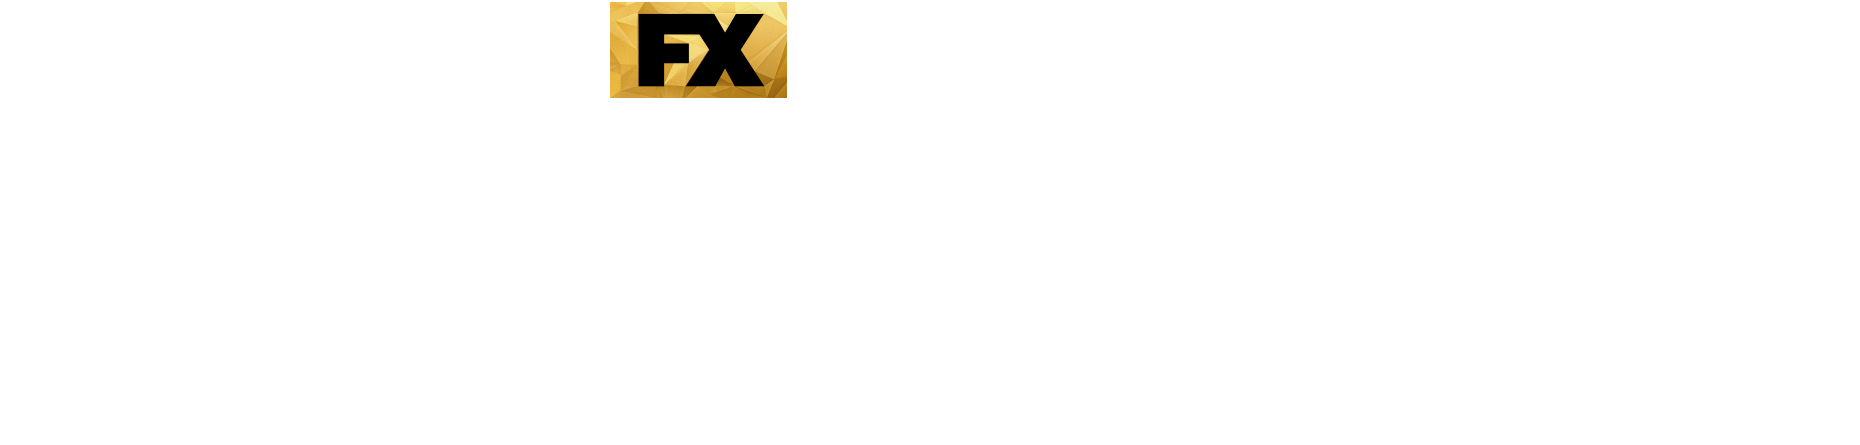 OJ_Show_Logo